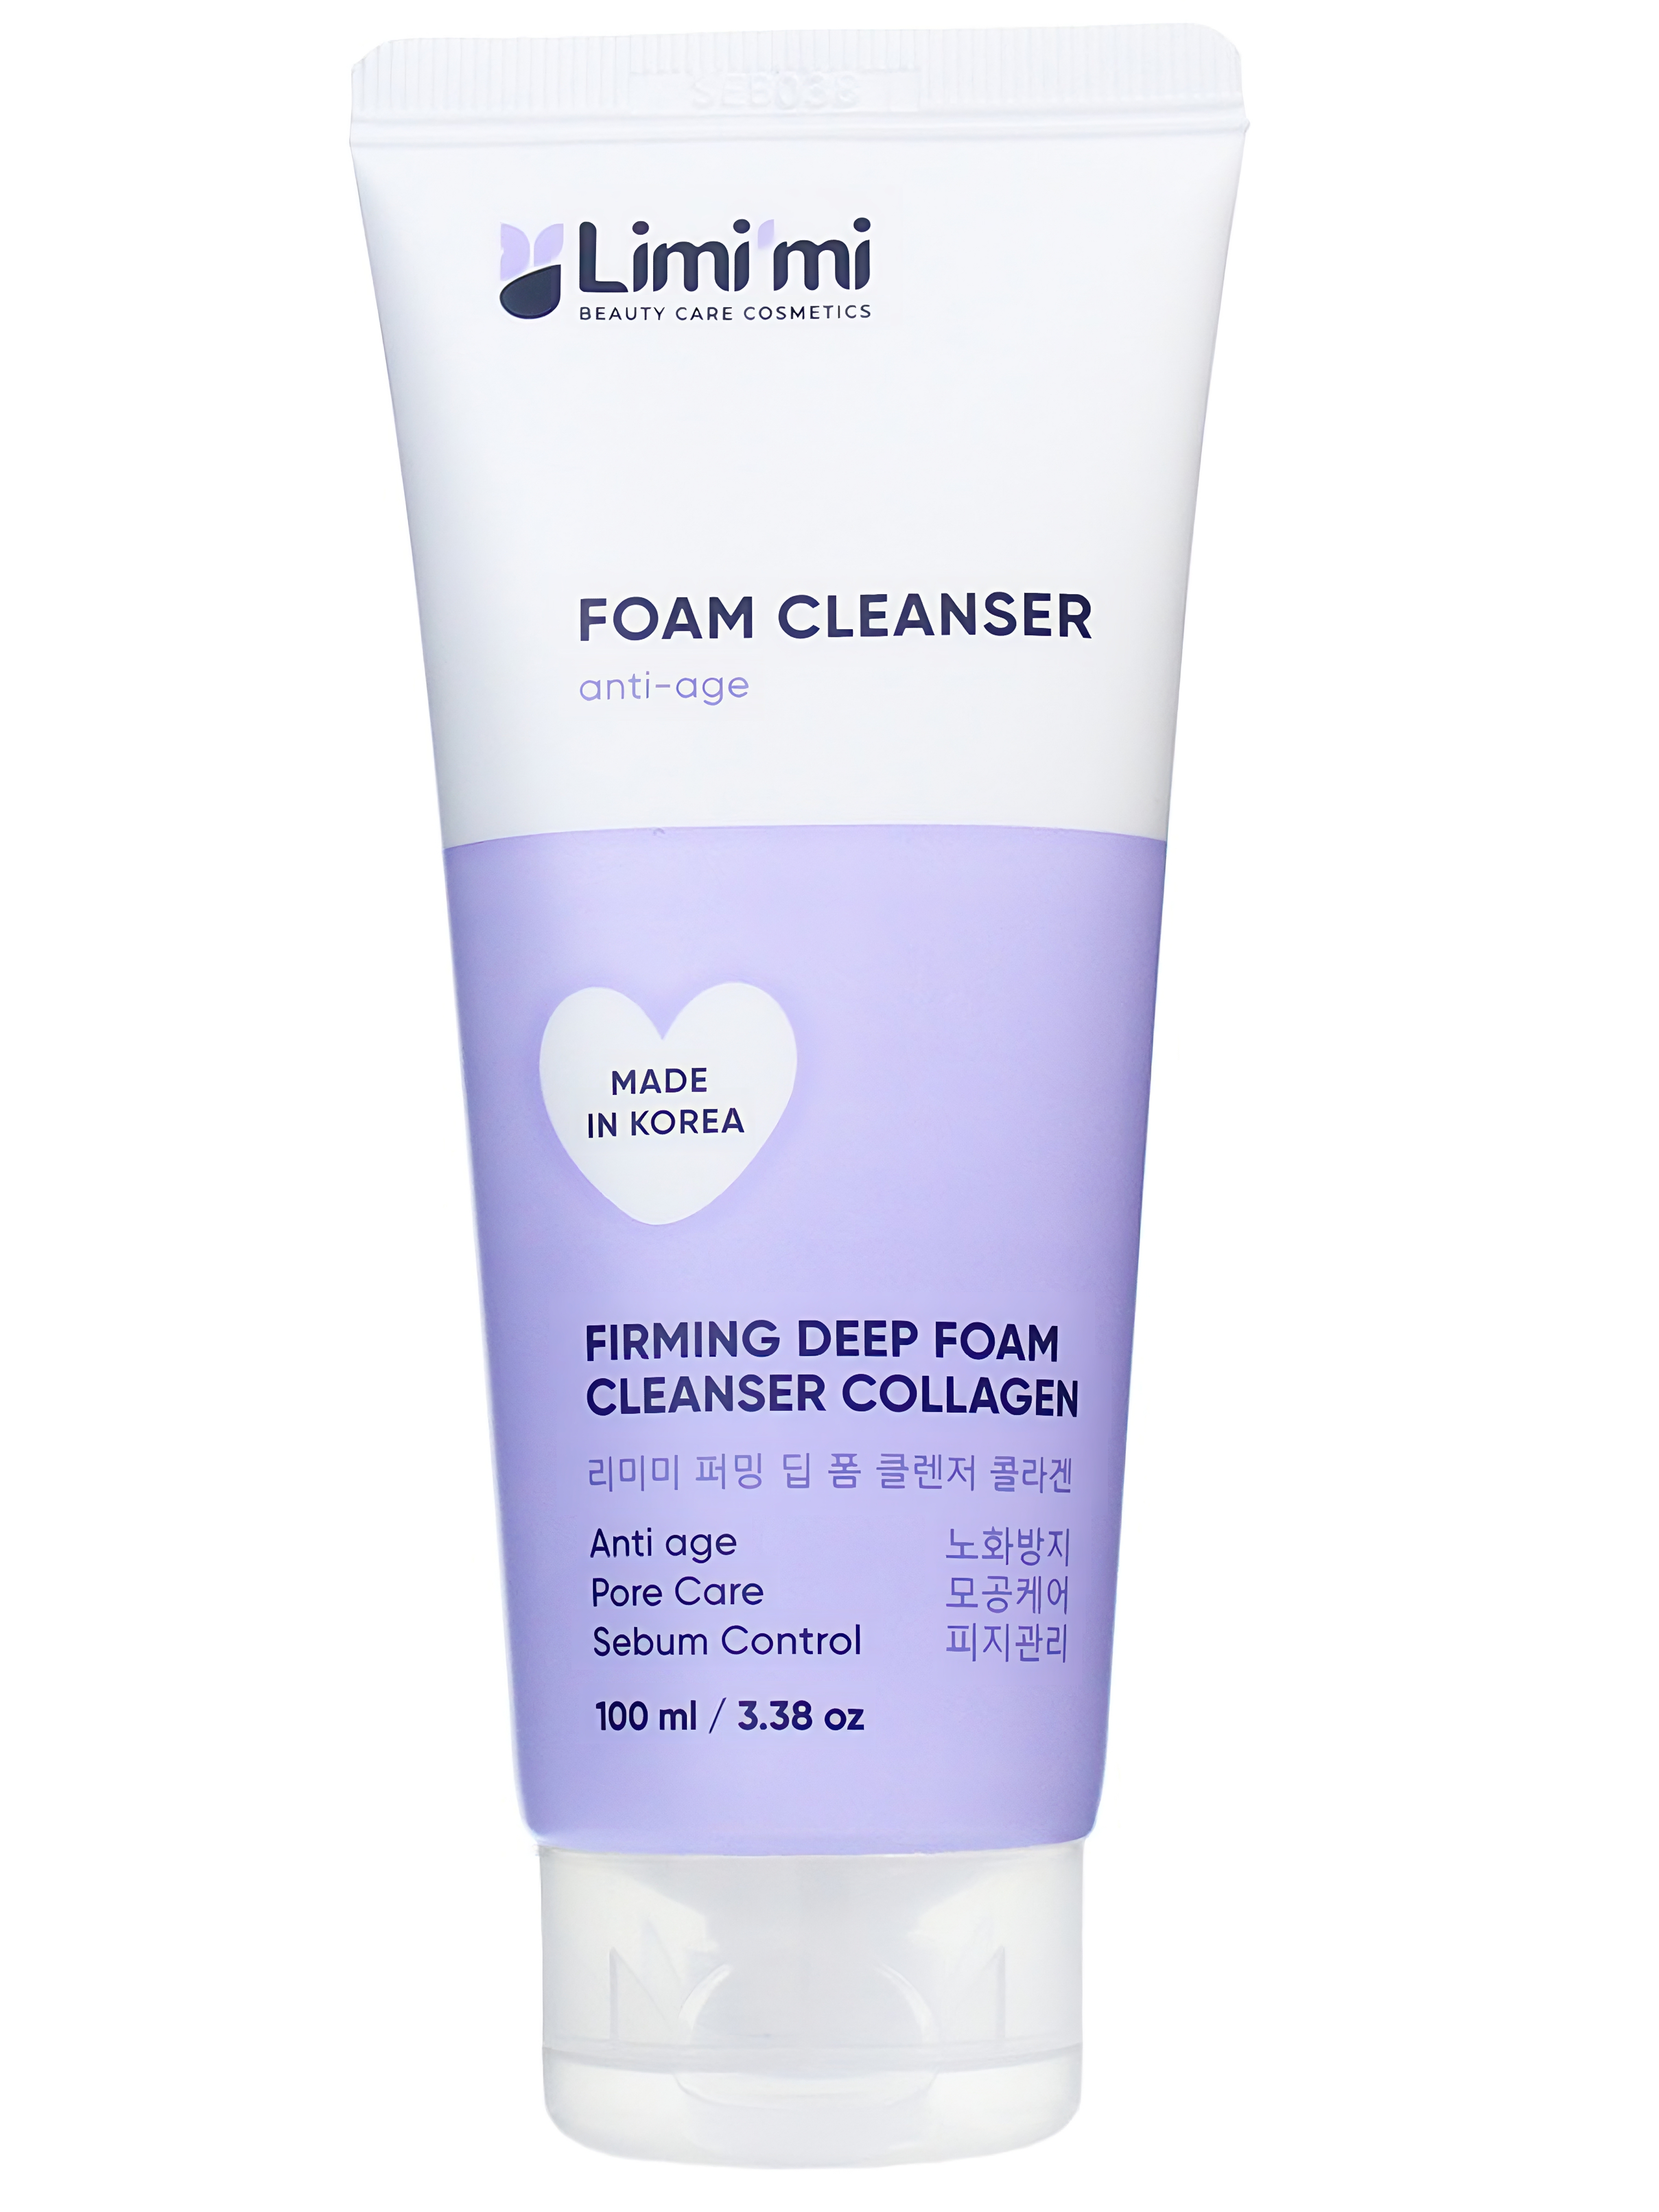 Пенка для умывания Limimi с коллагеном Firming Deep Foam Cleanser Collagen 100 мл пенка для умывания limimi с коллагеном firming deep foam cleanser collagen 100 мл